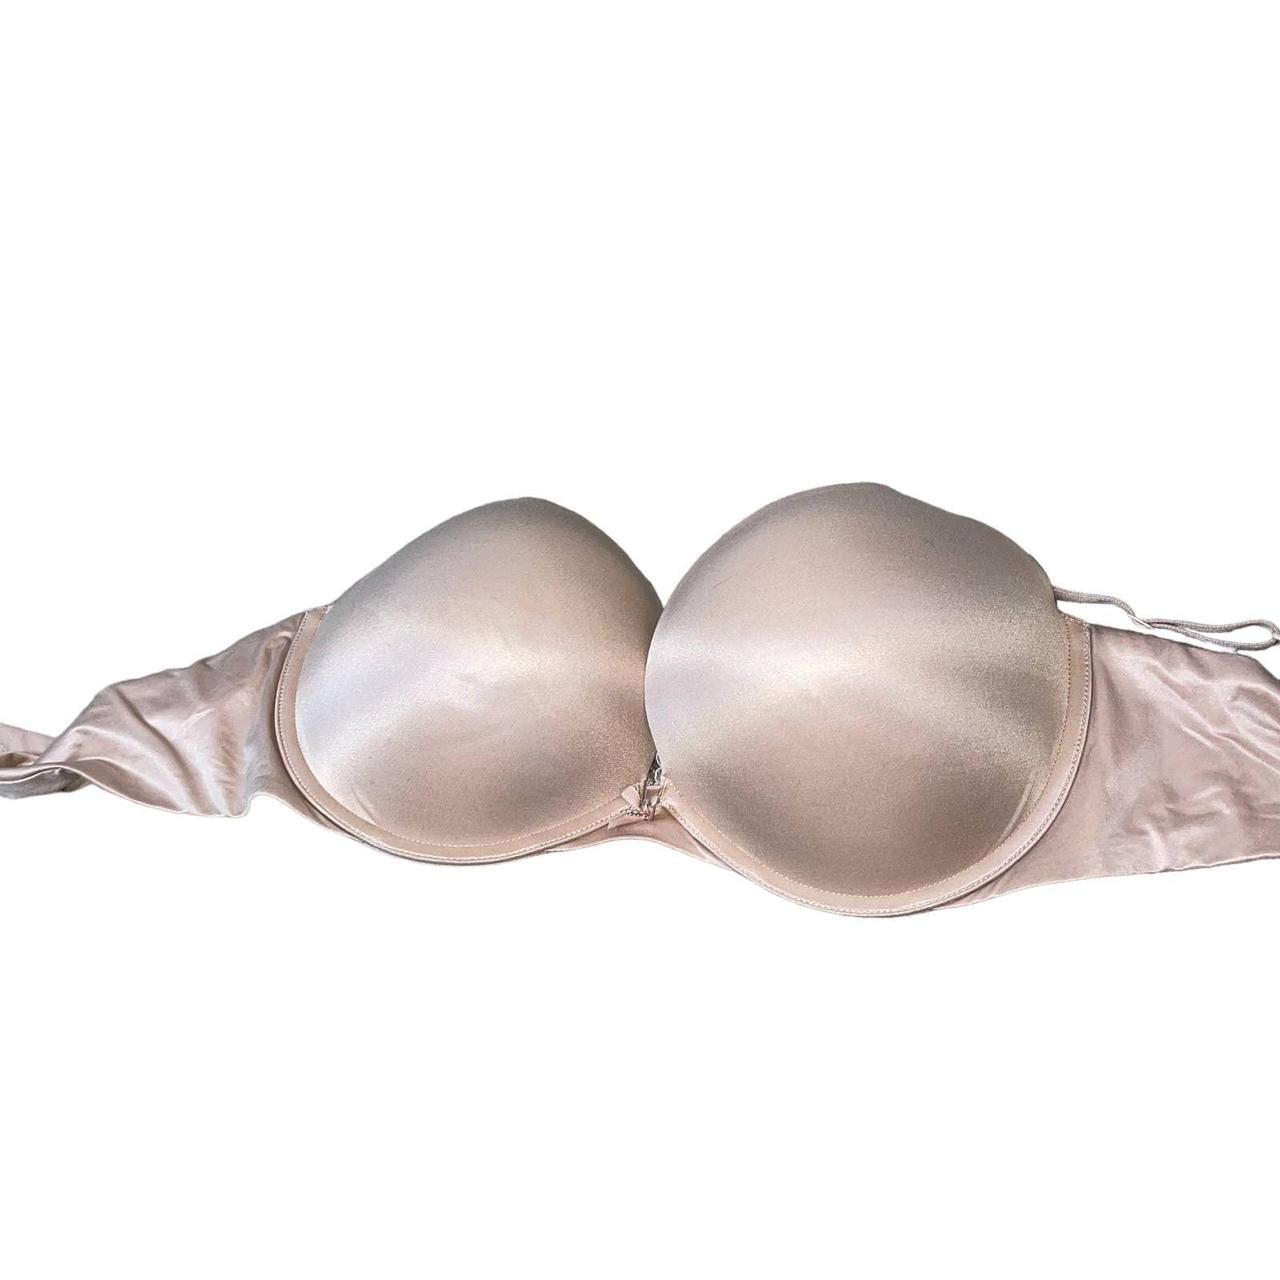 Victoria's Secret bra nude 36DD push up underwire - Depop